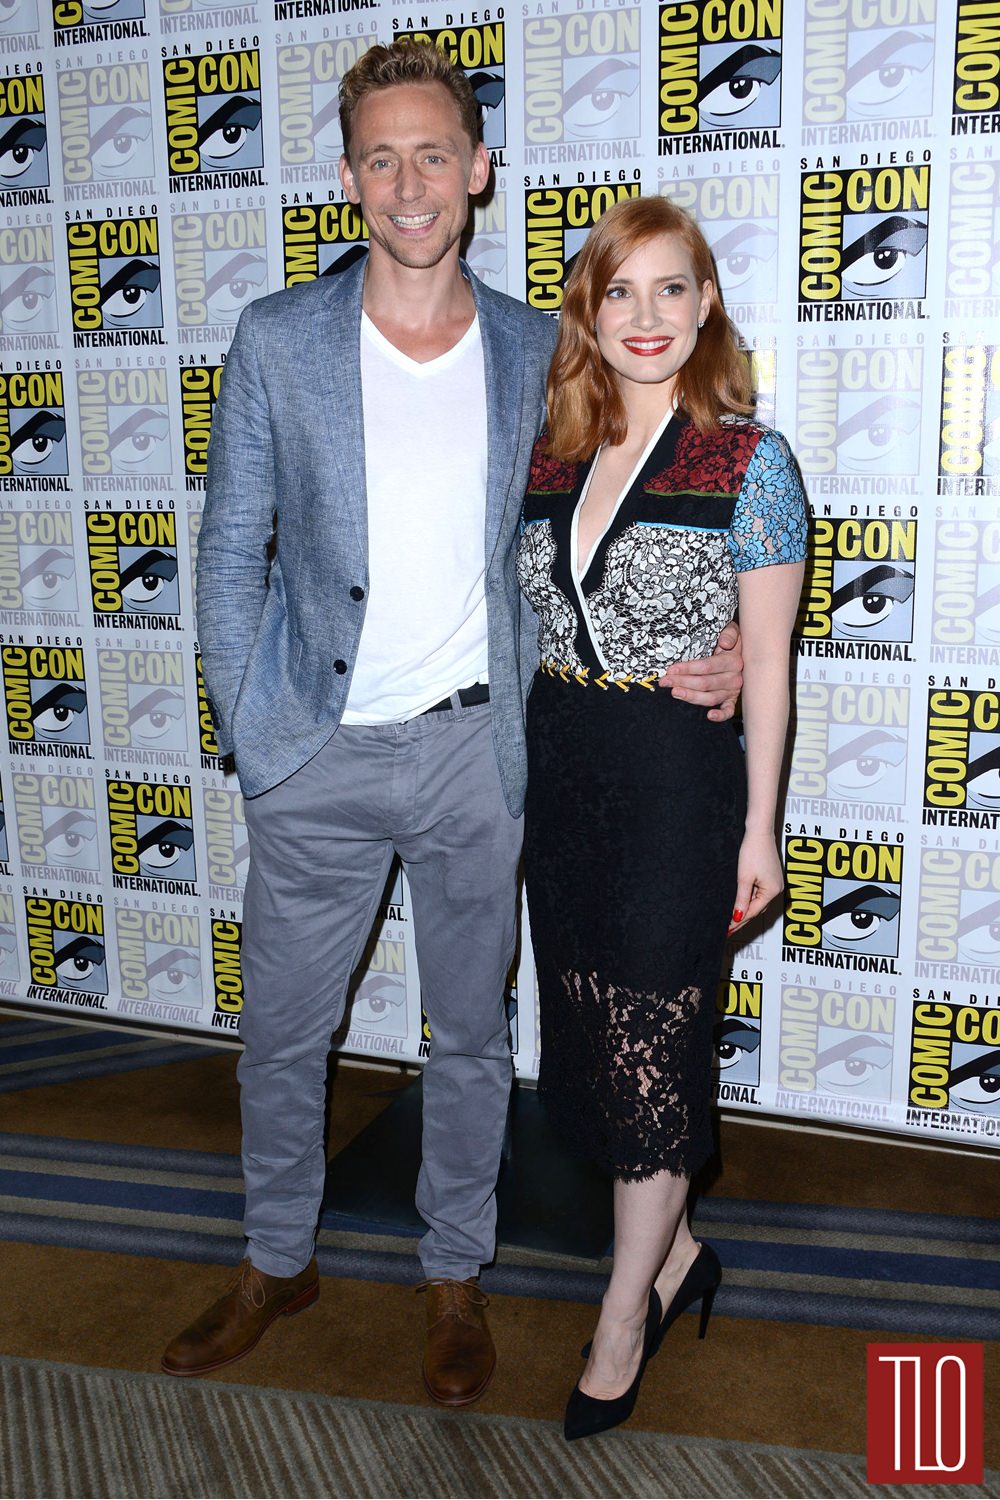 Tom-Hiddleston-Jessica-Chastain-Comic-Con-2015-Red-Carpet-Fashion-Preen-Tom-Lorenzo-Site-TLO (1)